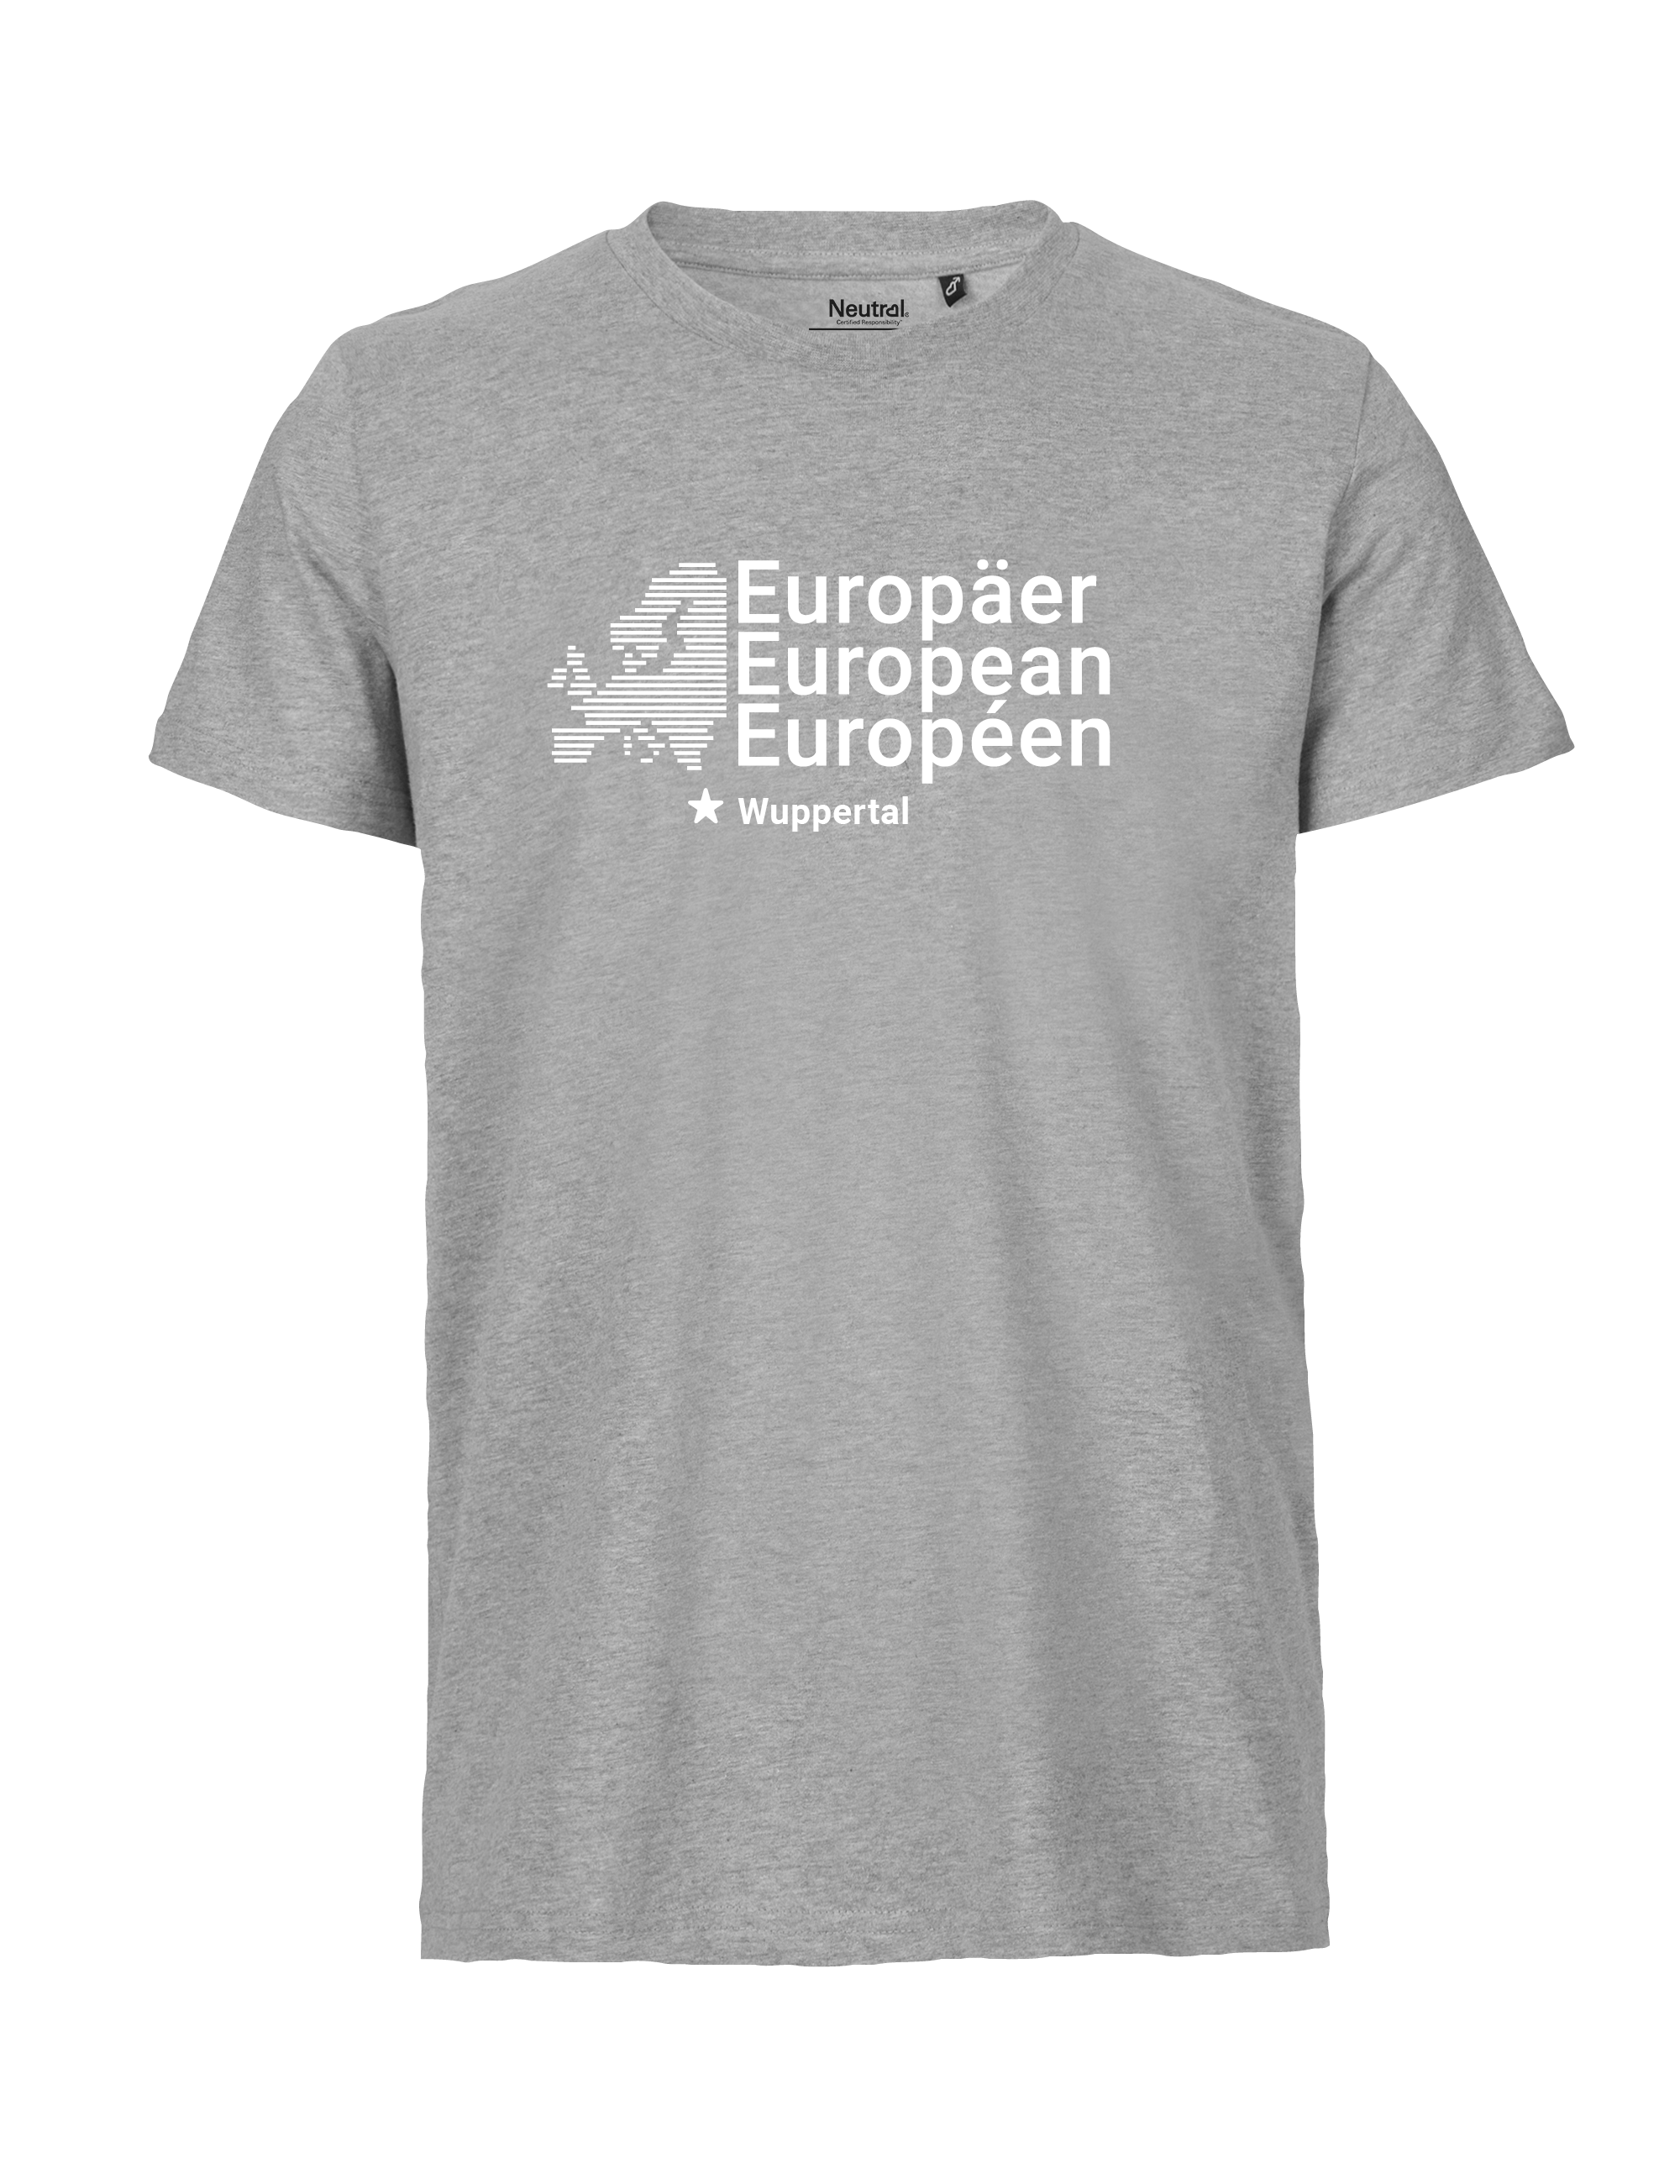 Europe-Emotions_Ansicht_Shirt_Wuppertal5